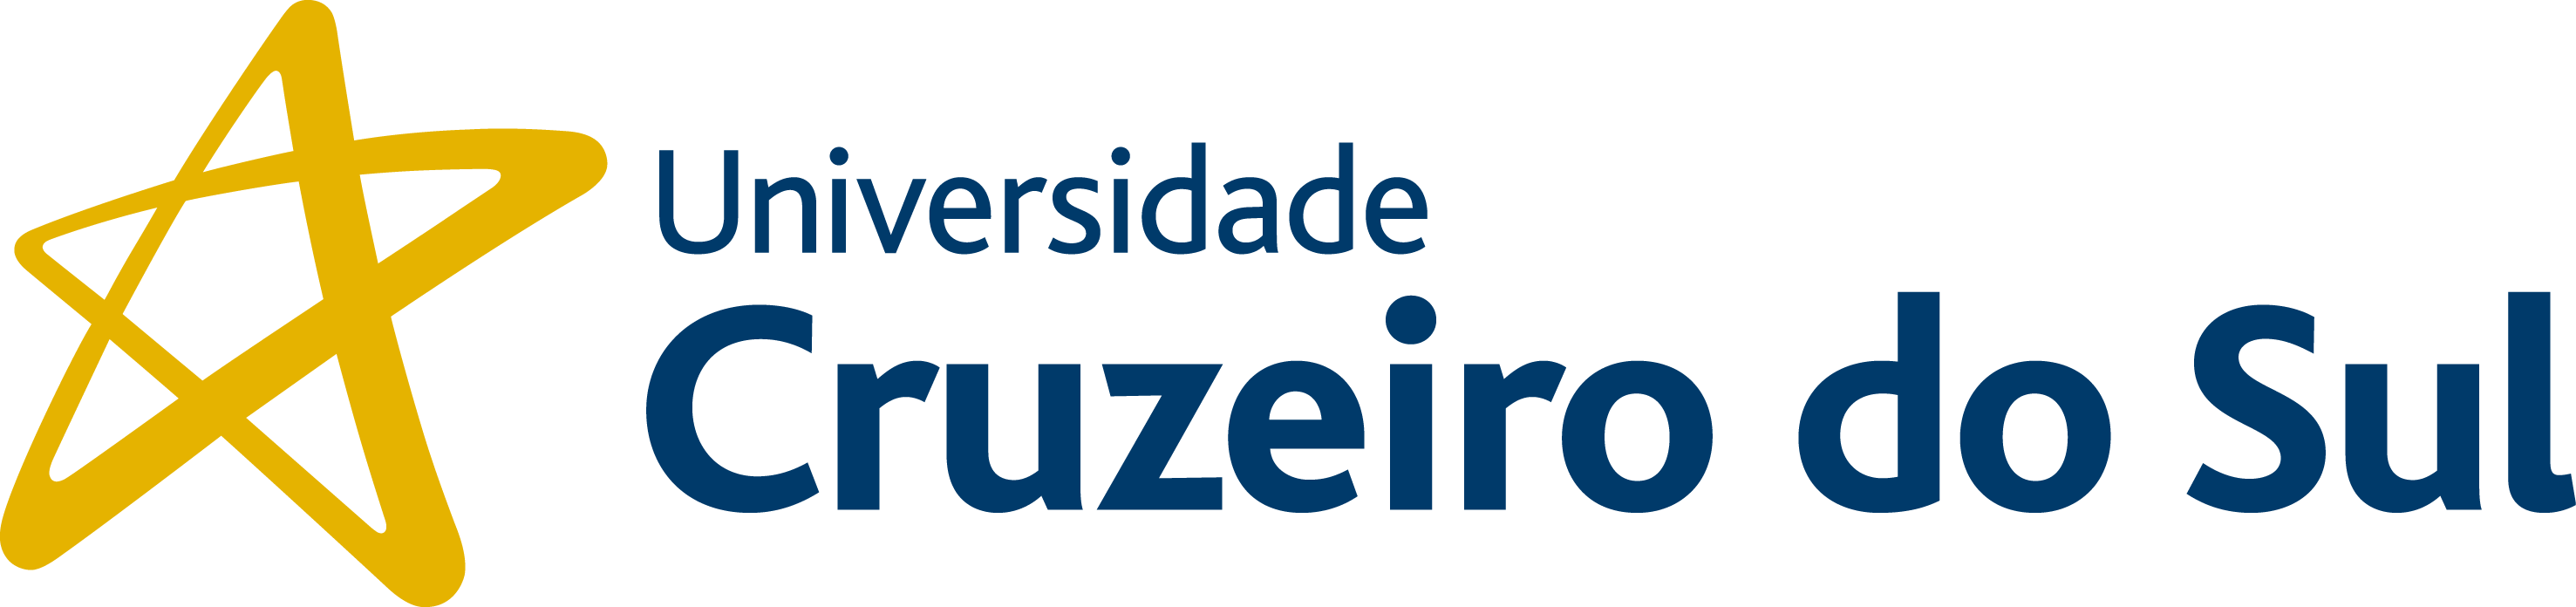 Universidade Cruzeiro do Sul - Campus São Miguel